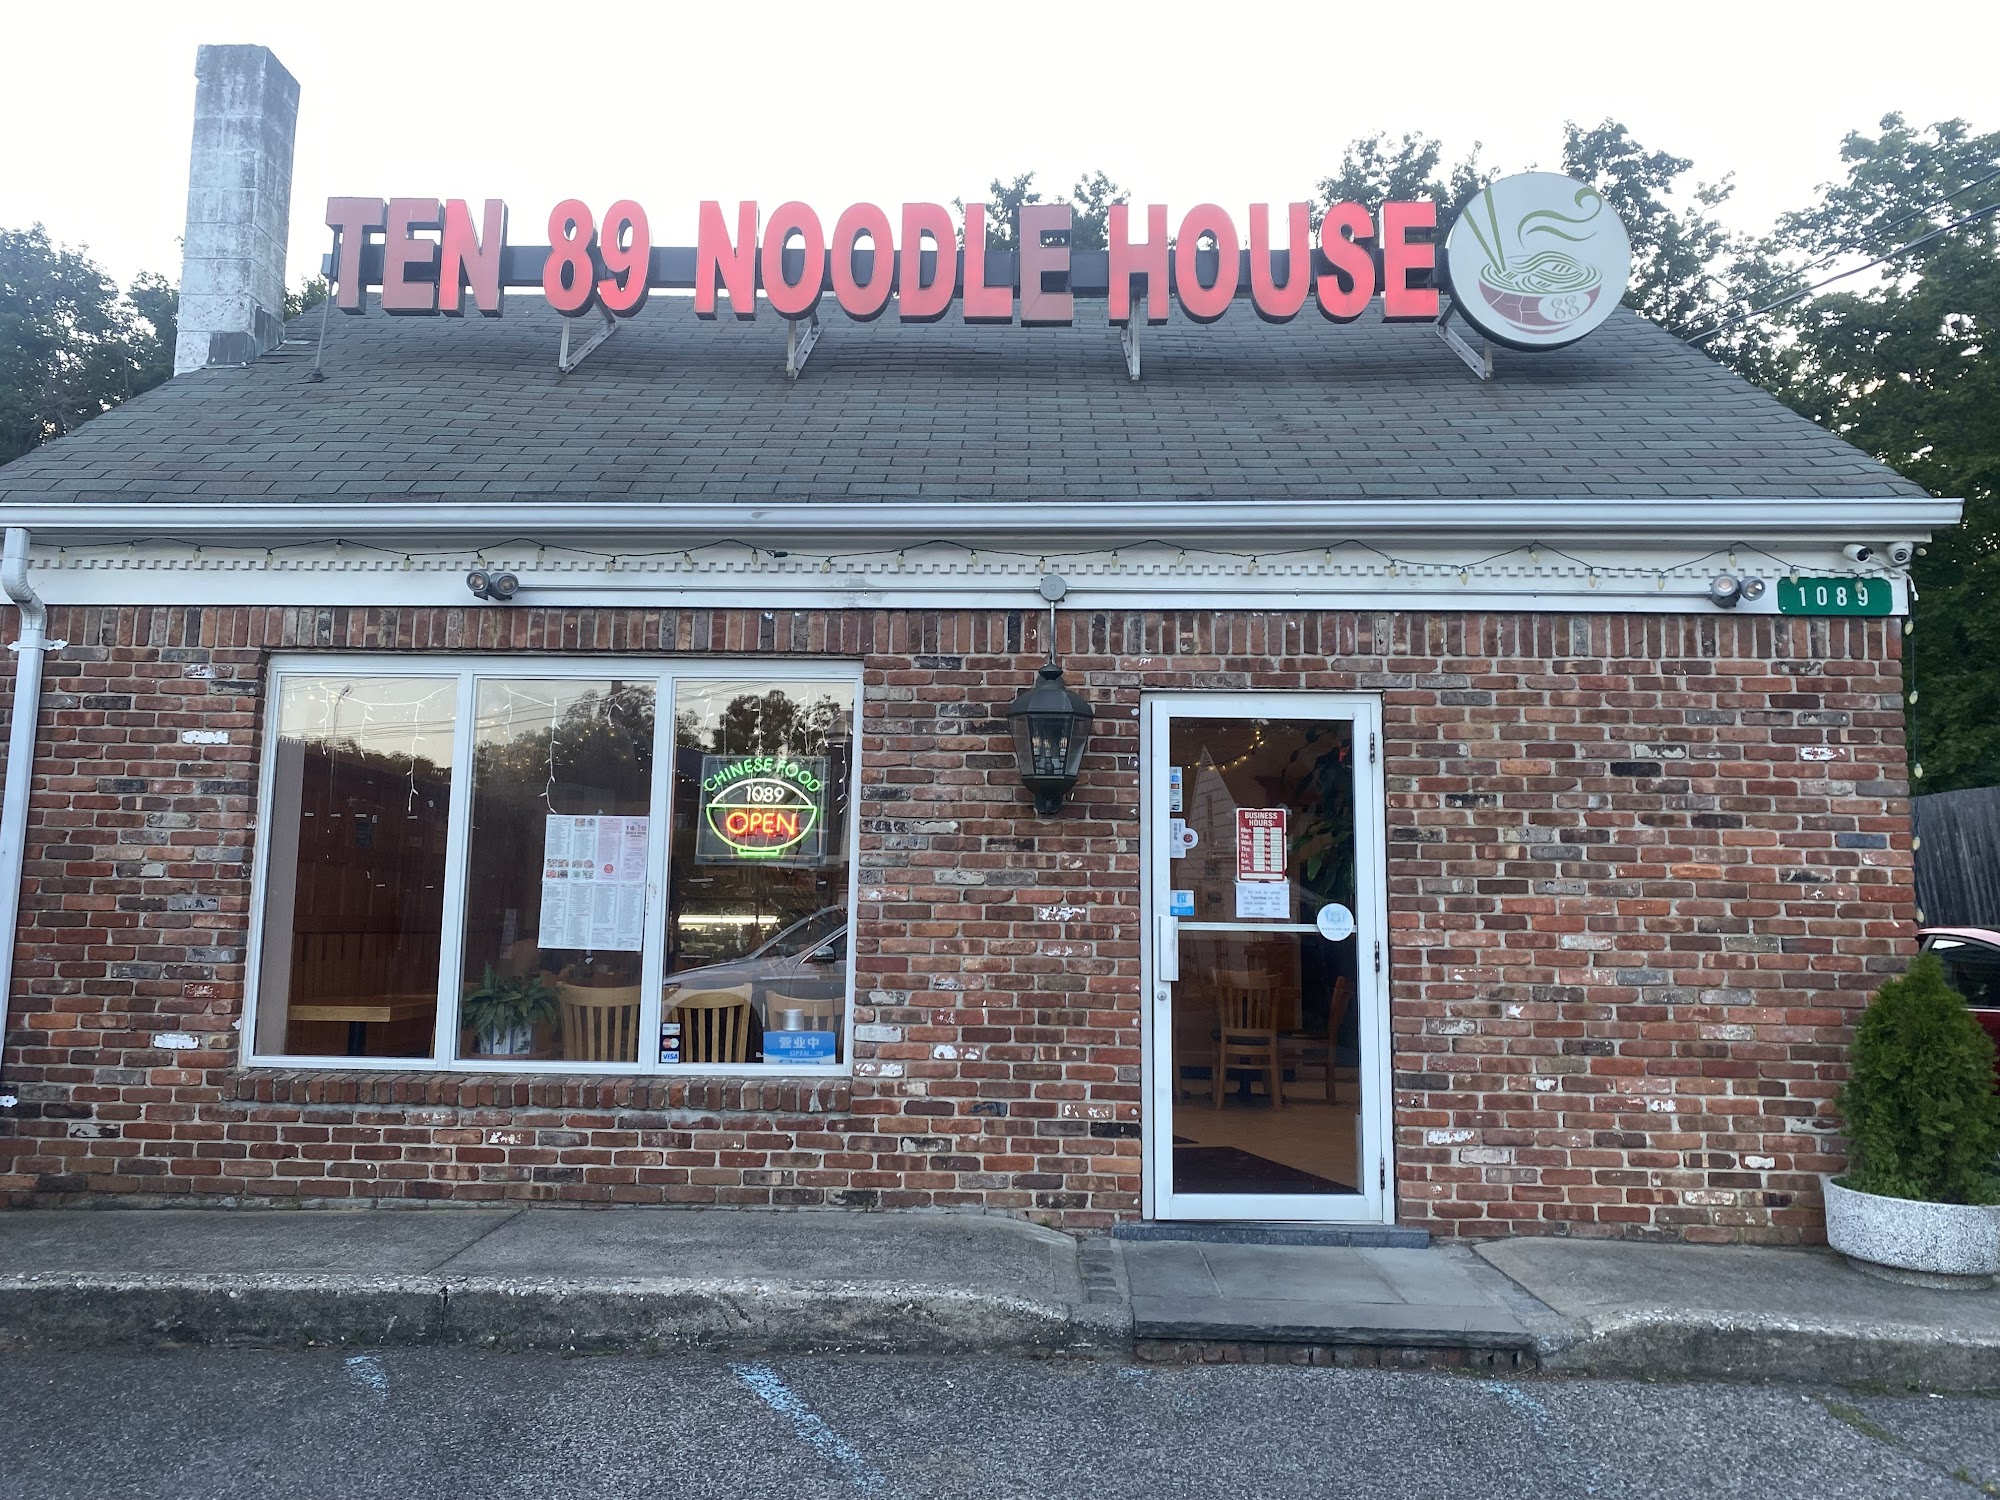 1089 Noodle House